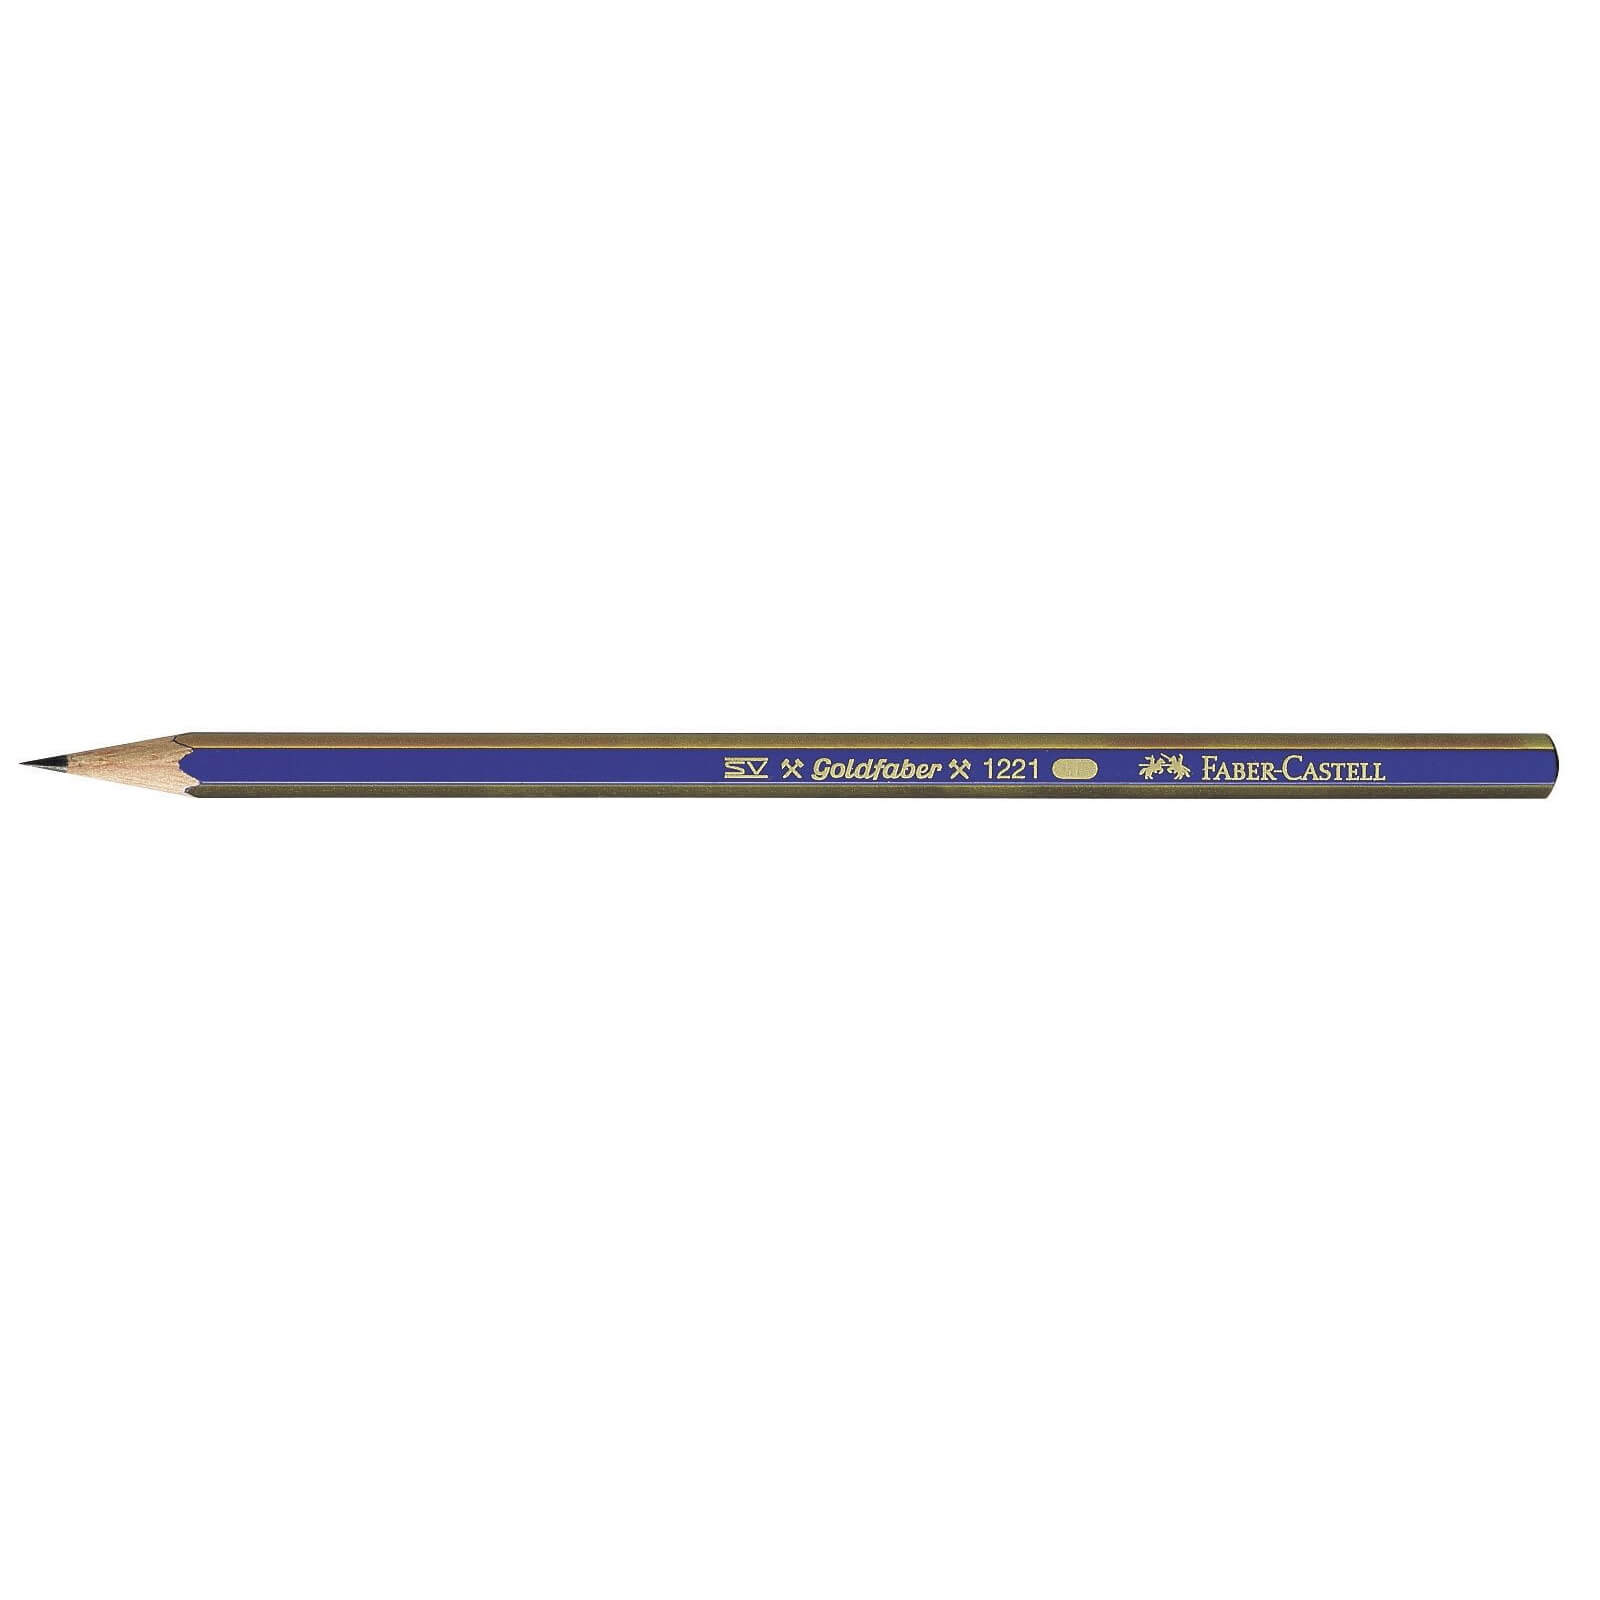 Creion grafit Goldfaber fara guma - 3B